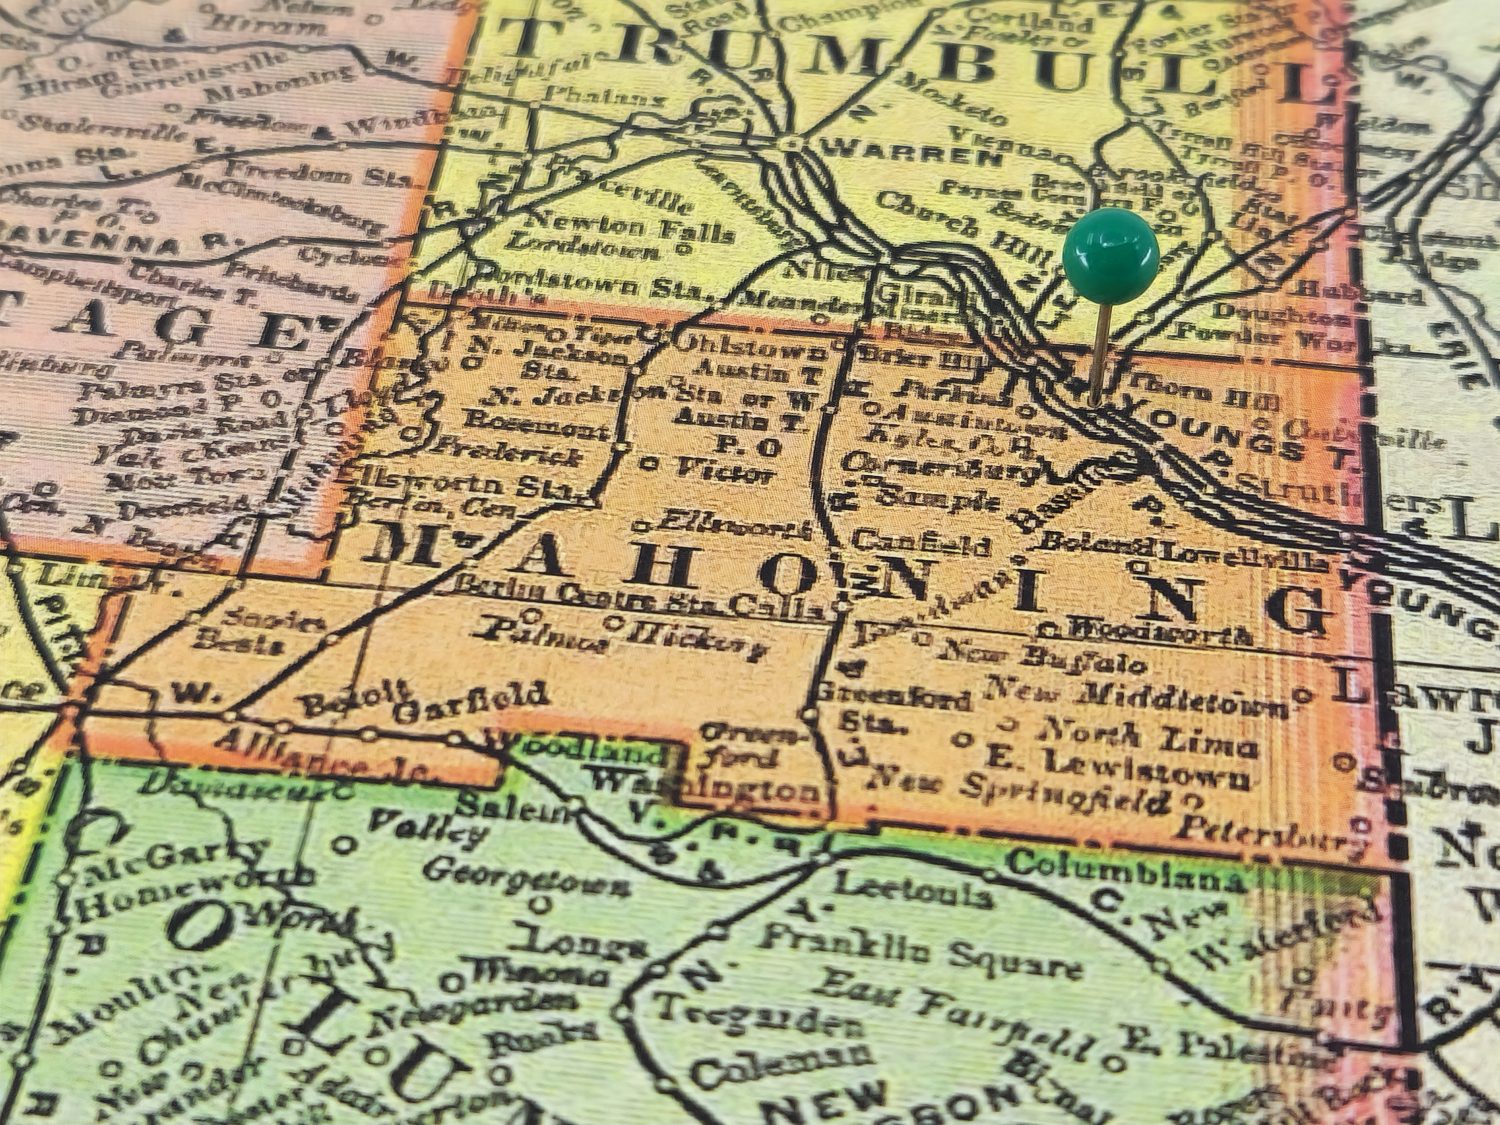 Contea di Mahoning, Ohio, contrassegnata da un puntino verde su una colorata mappa vintage.  Il capoluogo della contea si trova nella città di Youngstown, Ohio.